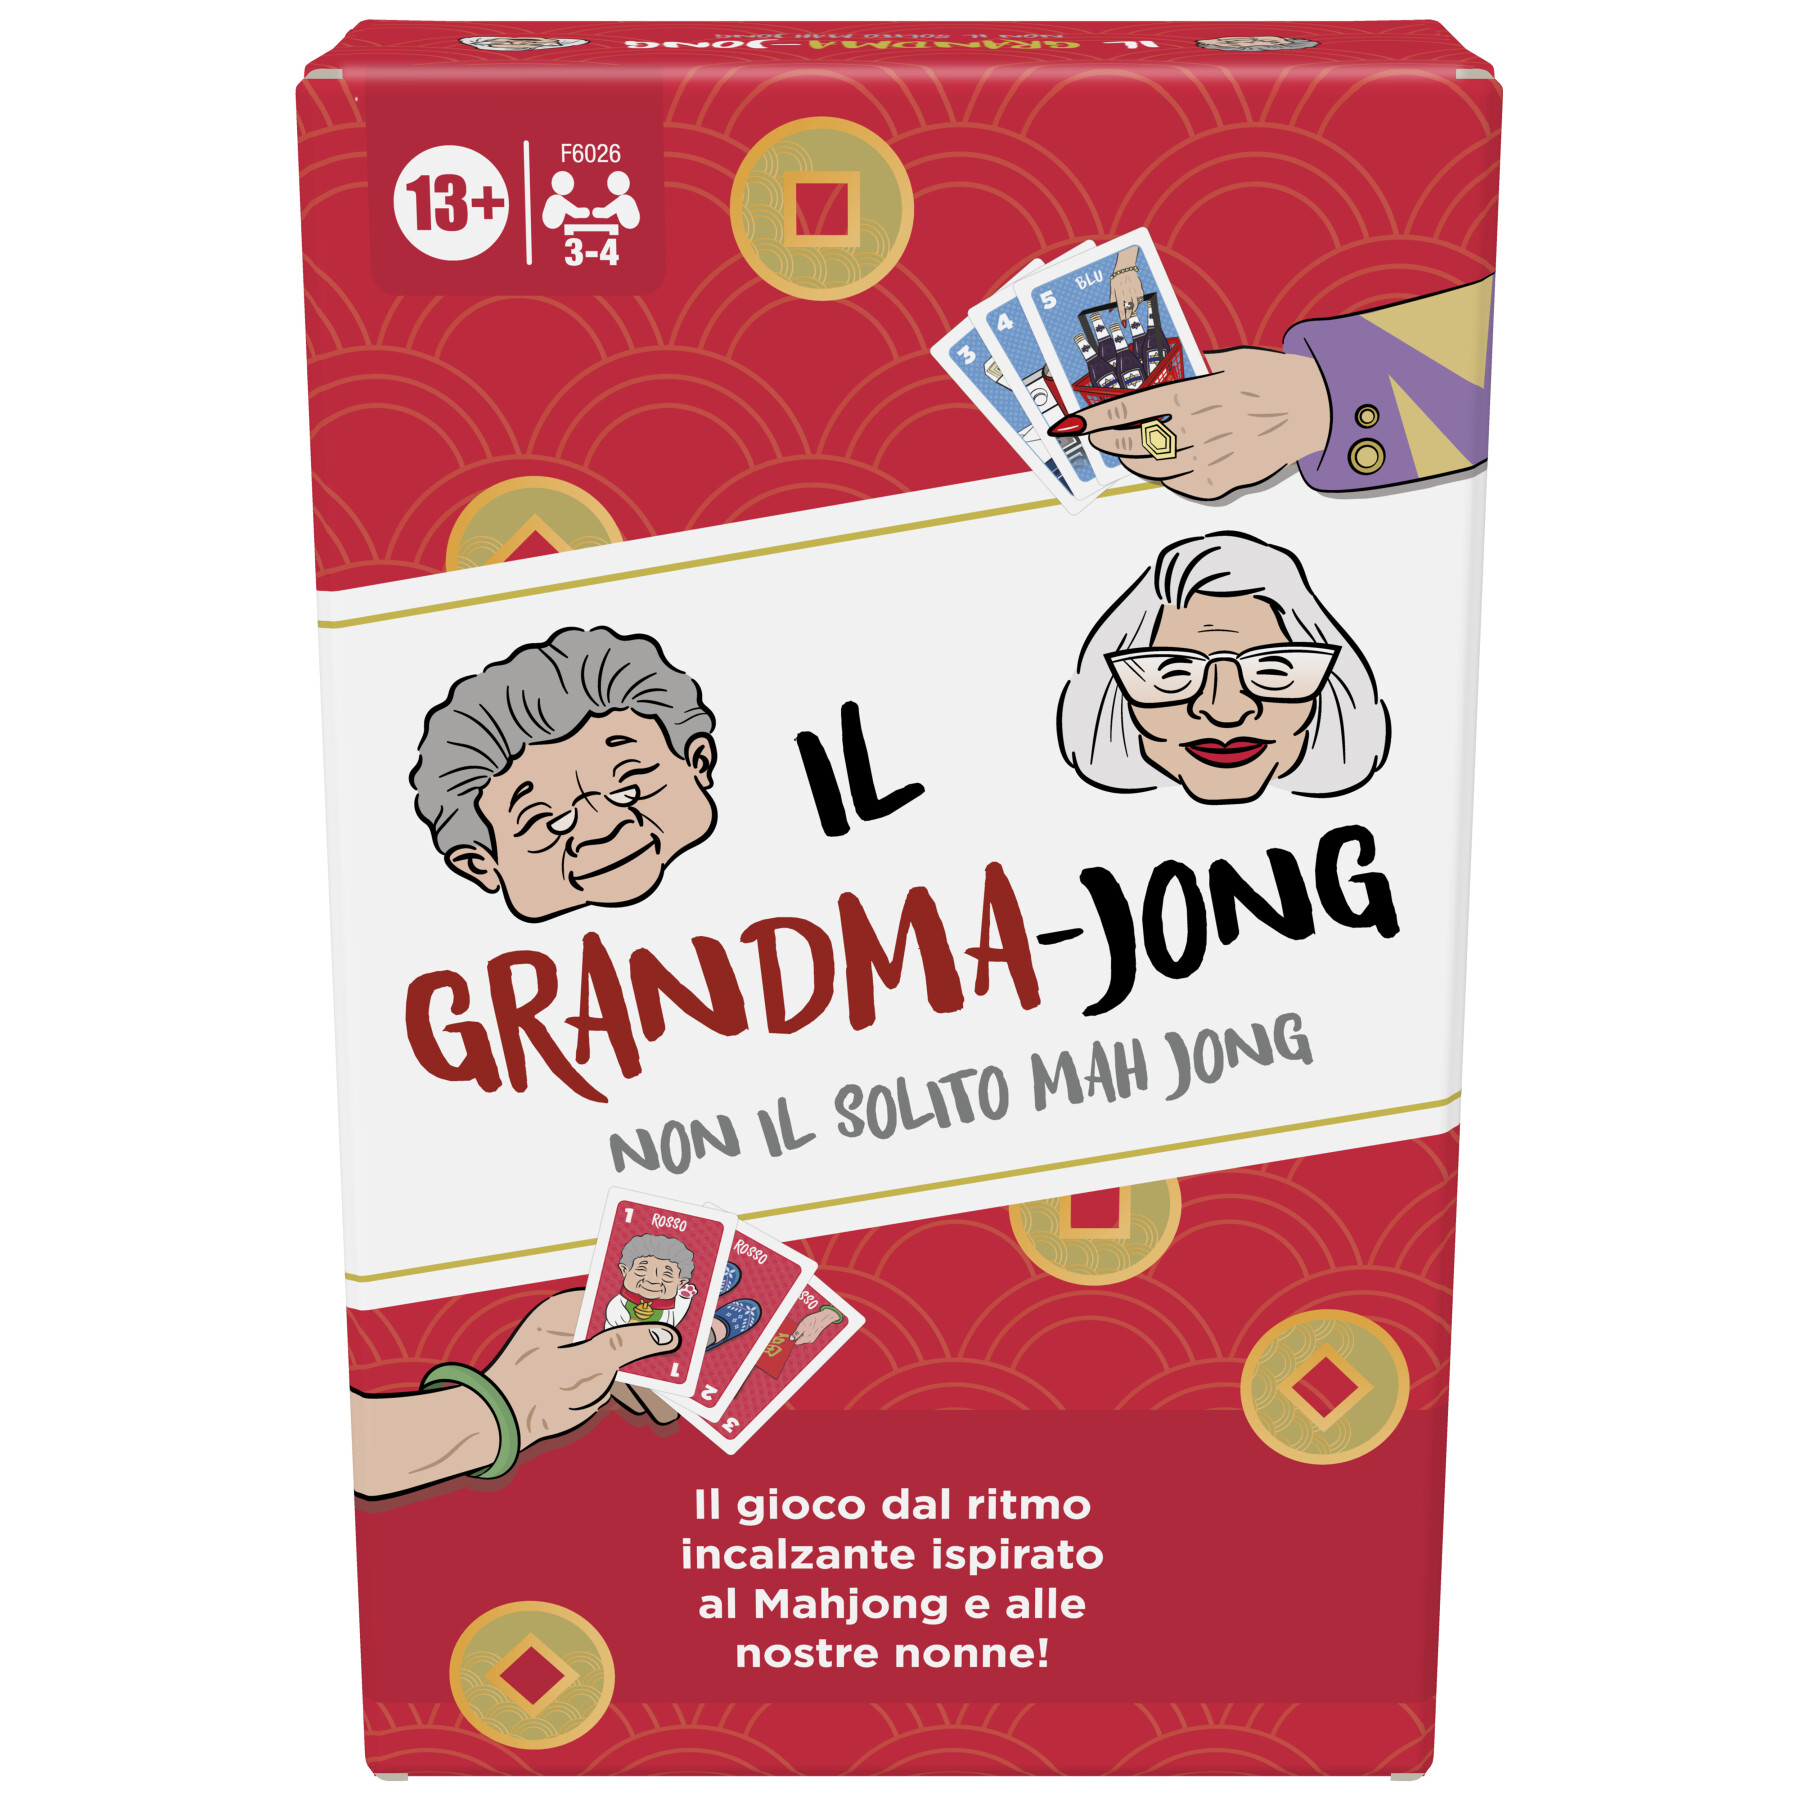 Il grandma-jong, un gioco di carte dal ritmo incalzante per 3-4 giocatori, ispirato al mahjong e a 2 nonne, gioco per la famiglia, divertente gioco per le feste, dai 13 anni in su - HASBRO GAMING